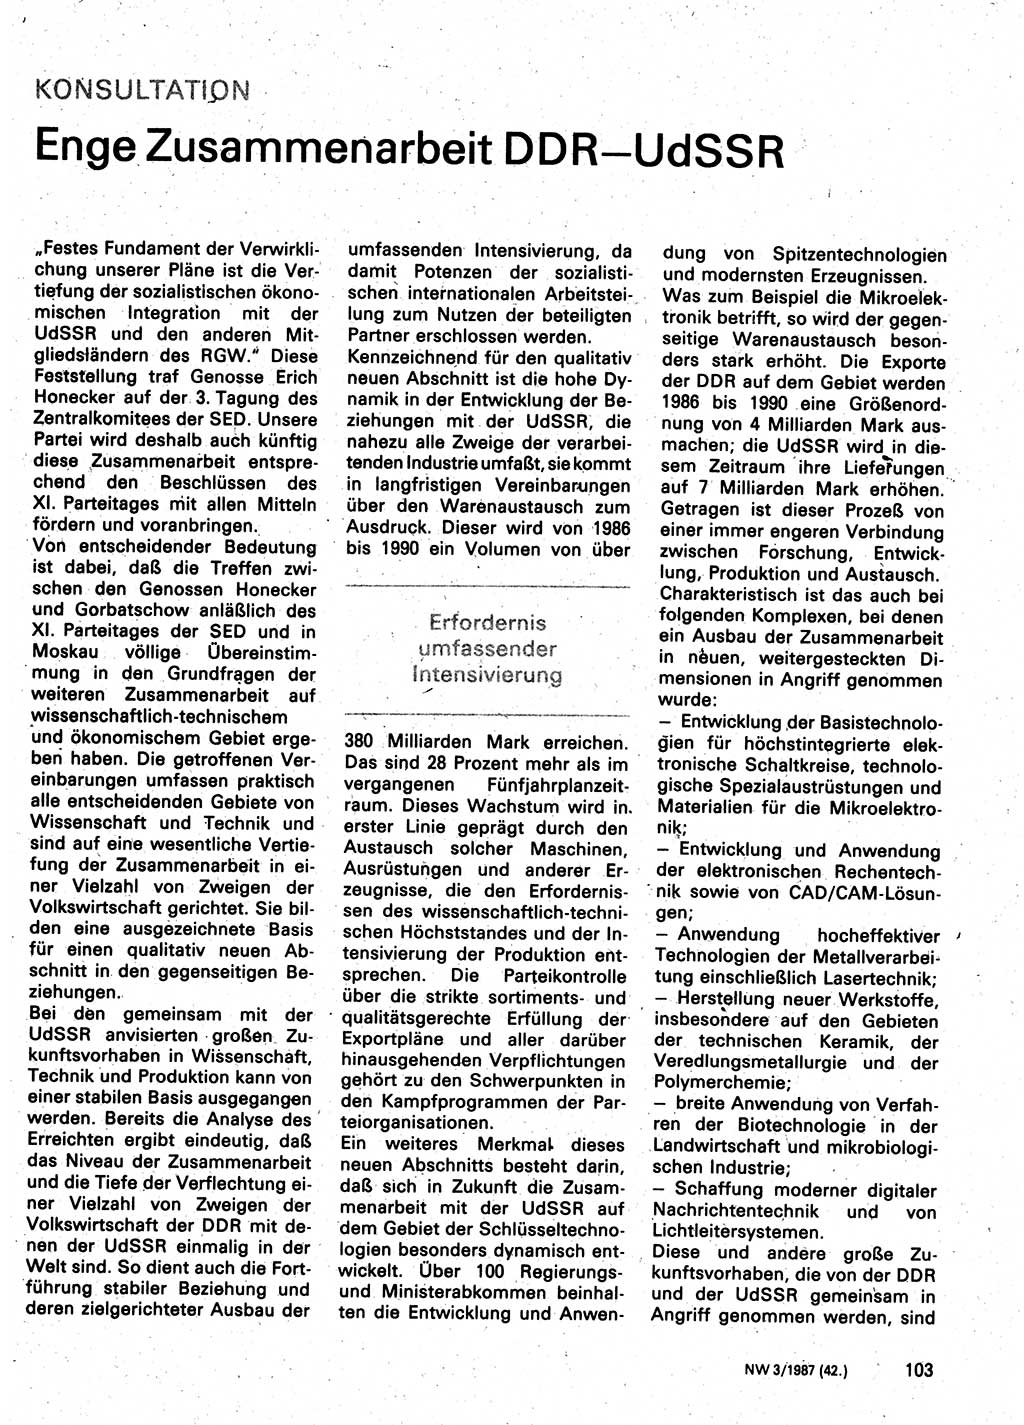 Neuer Weg (NW), Organ des Zentralkomitees (ZK) der SED (Sozialistische Einheitspartei Deutschlands) für Fragen des Parteilebens, 42. Jahrgang [Deutsche Demokratische Republik (DDR)] 1987, Seite 103 (NW ZK SED DDR 1987, S. 103)